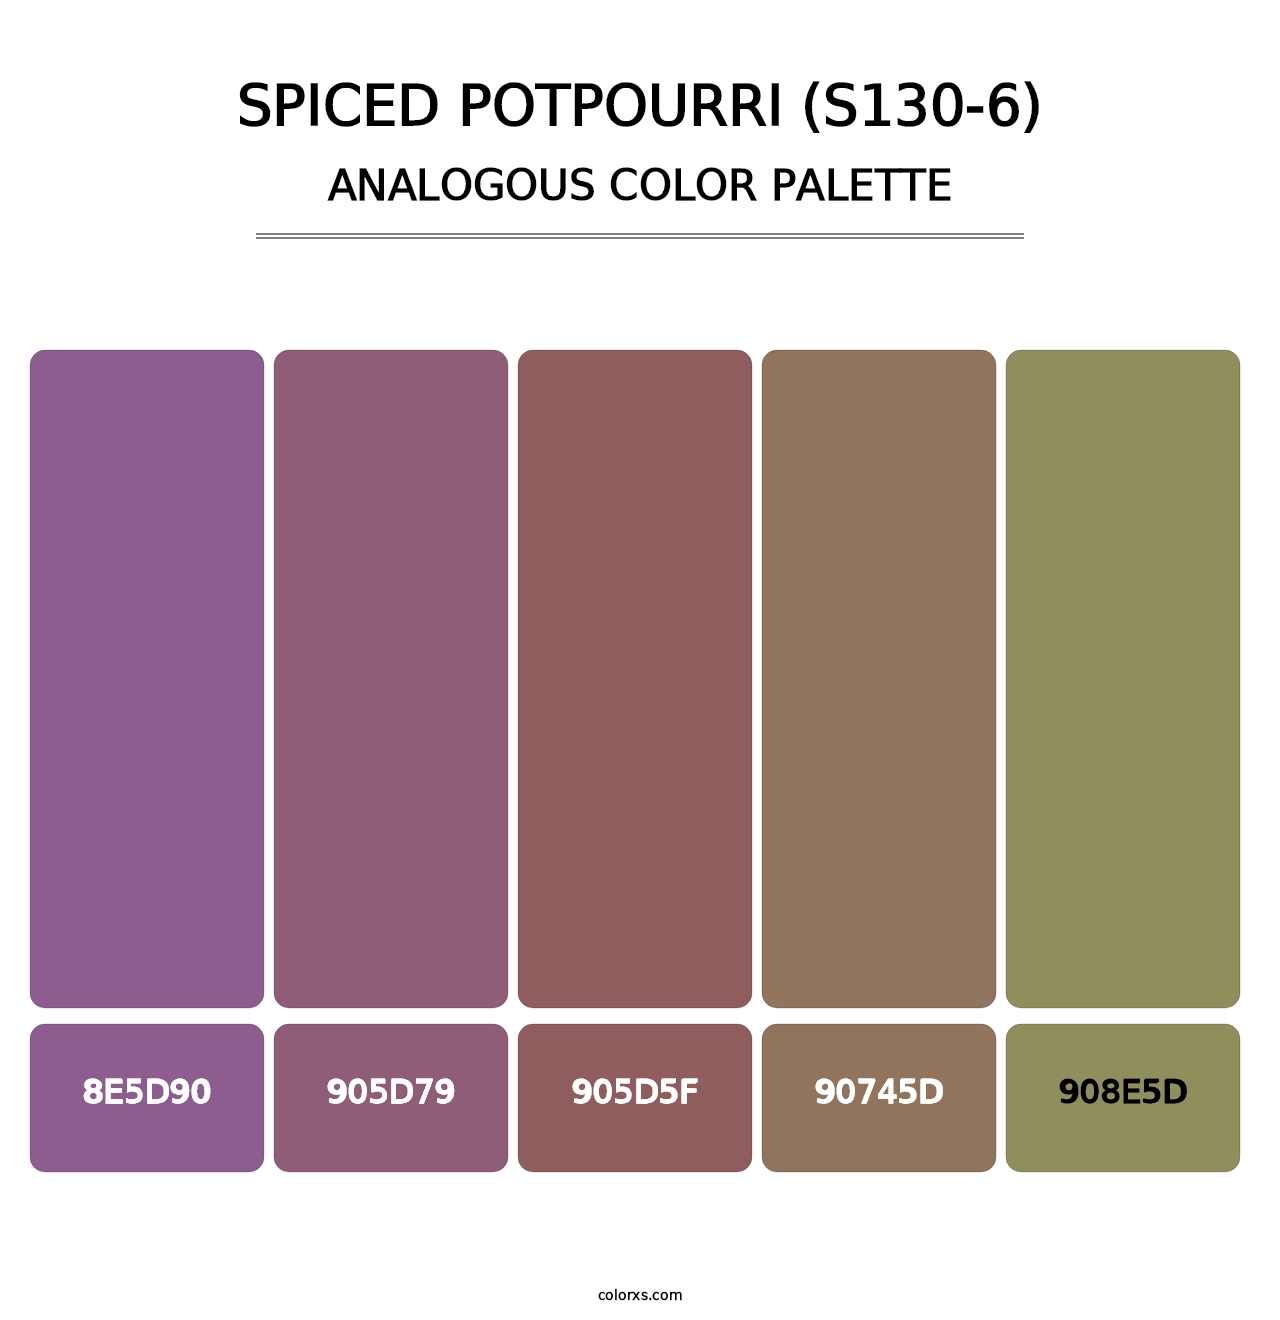 Spiced Potpourri (S130-6) - Analogous Color Palette